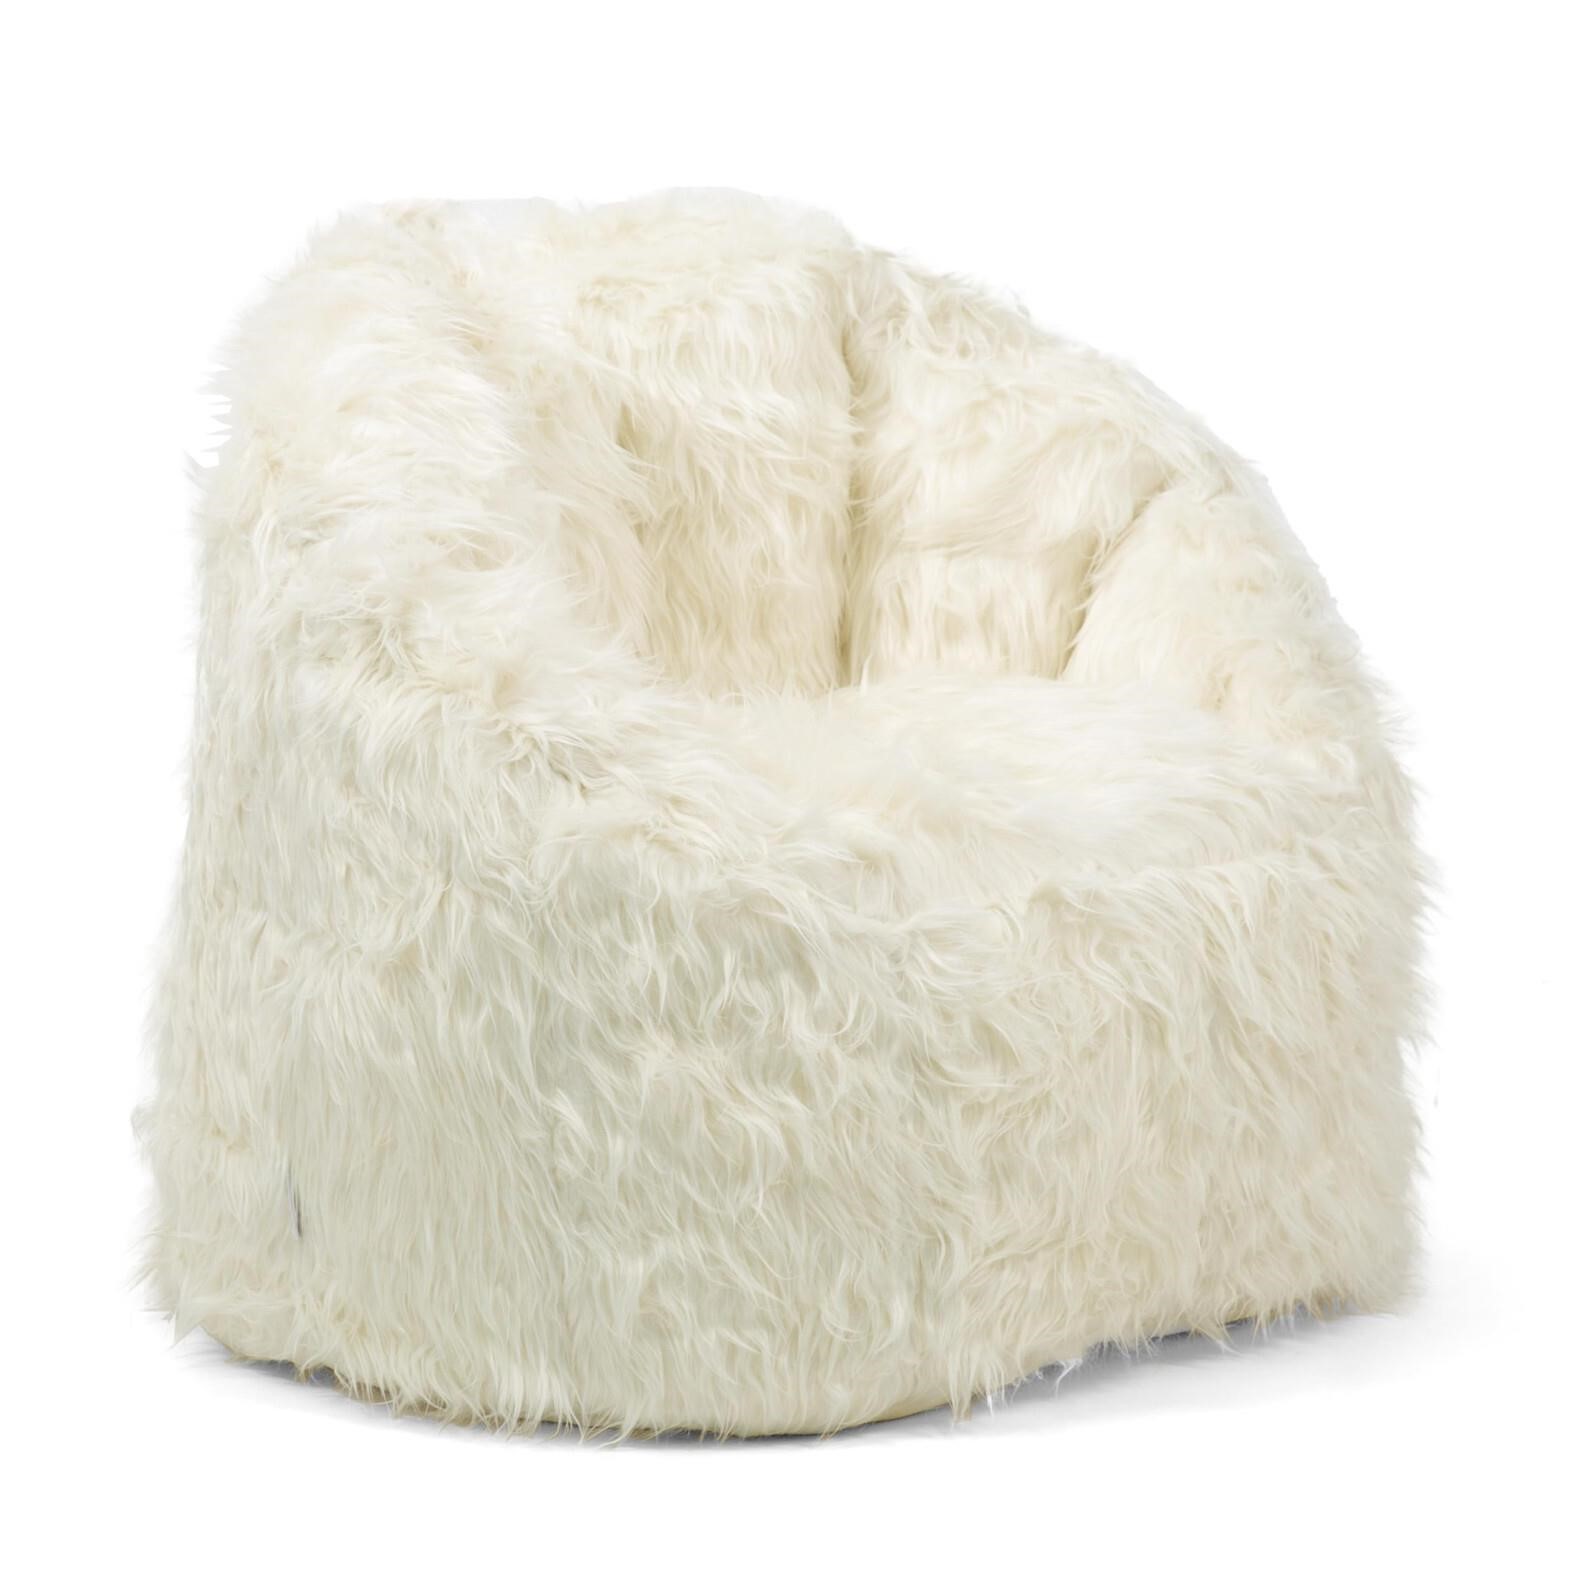 Big Joe Milano Bean Bag Chair, Ivory Shag Fur, So